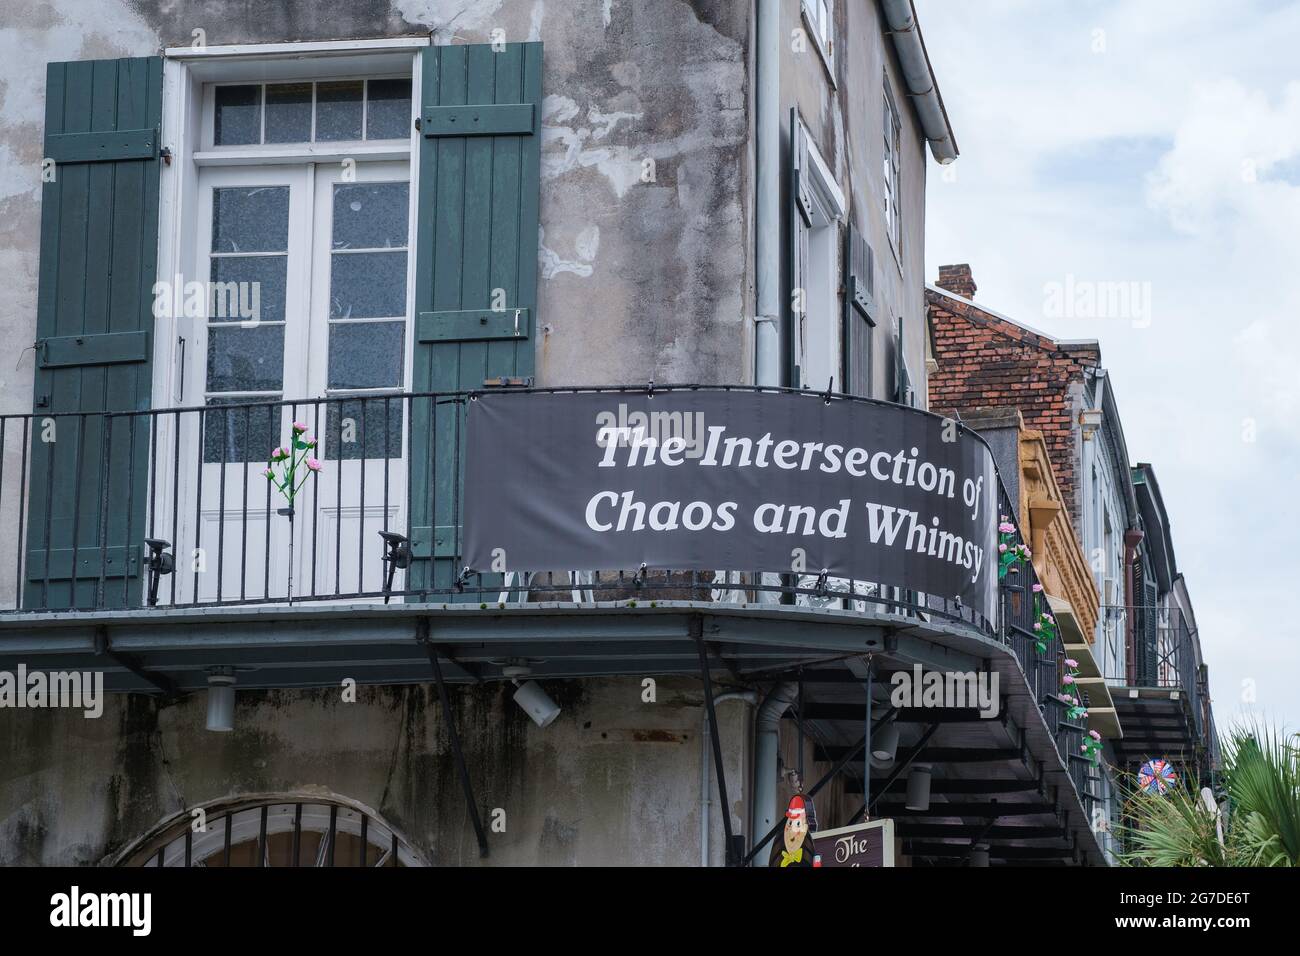 LA NOUVELLE-ORLÉANS, LA, USA - 10 JUILLET 2021 : panneau « The intersection of chaos and Whimsy » sur un balcon sur Decatur Street dans le quartier français Banque D'Images